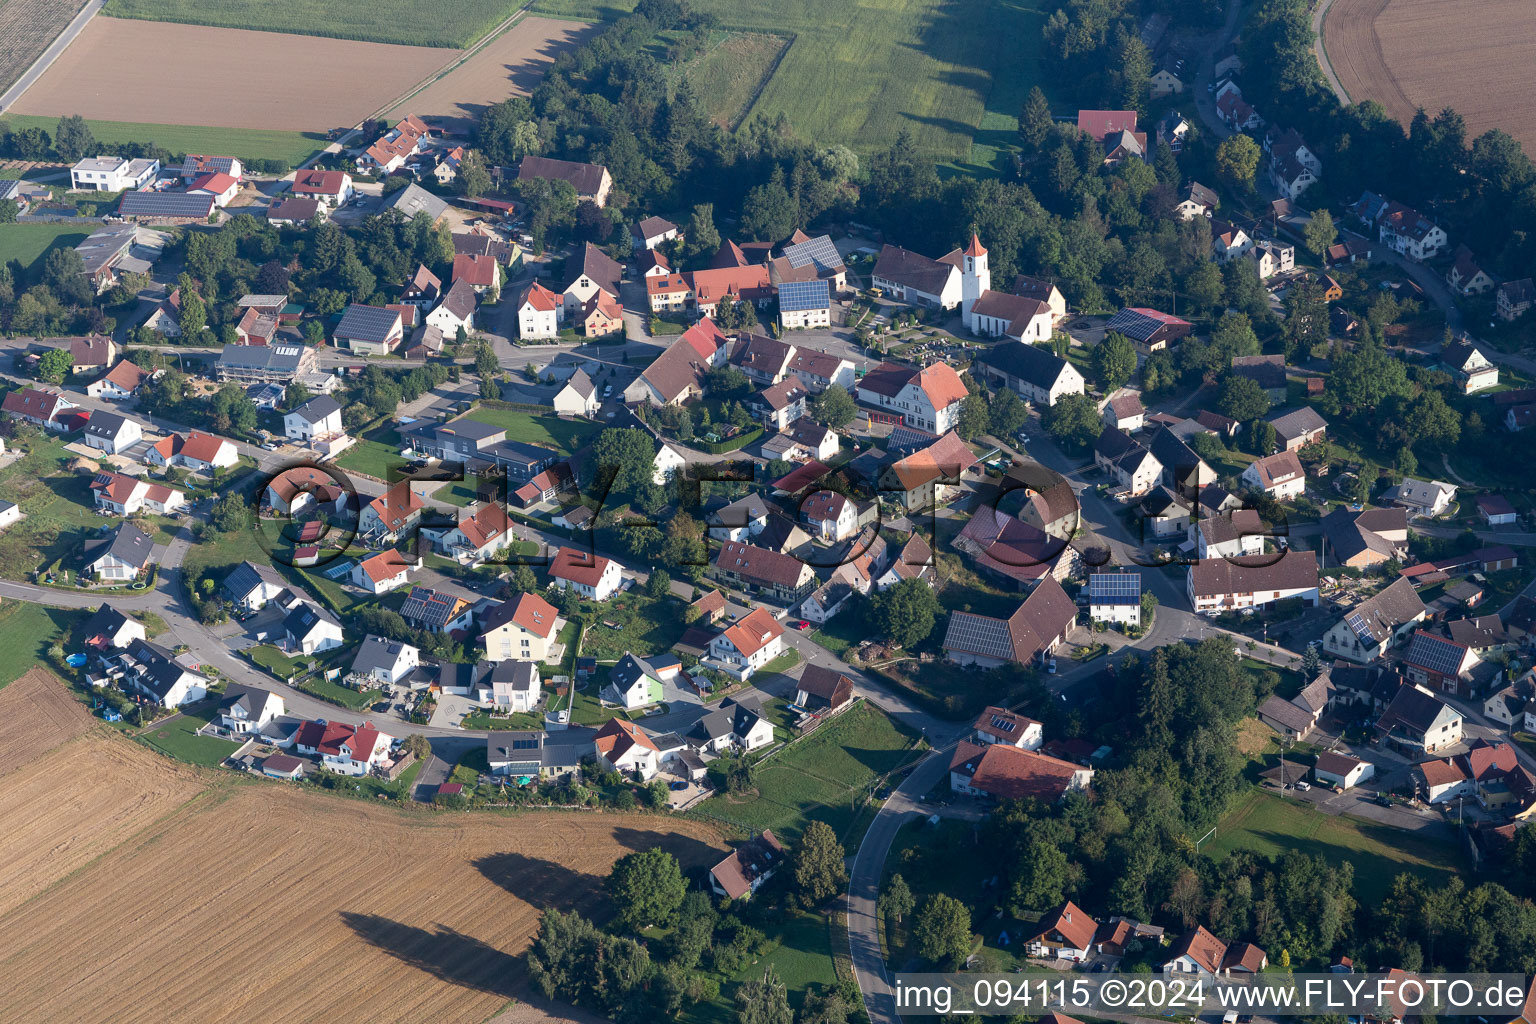 Luftbild von Ortsansicht der Straßen und Häuser der Wohngebiete im Ortsteil Erisdorf in Ertingen im Bundesland Baden-Württemberg, Deutschland